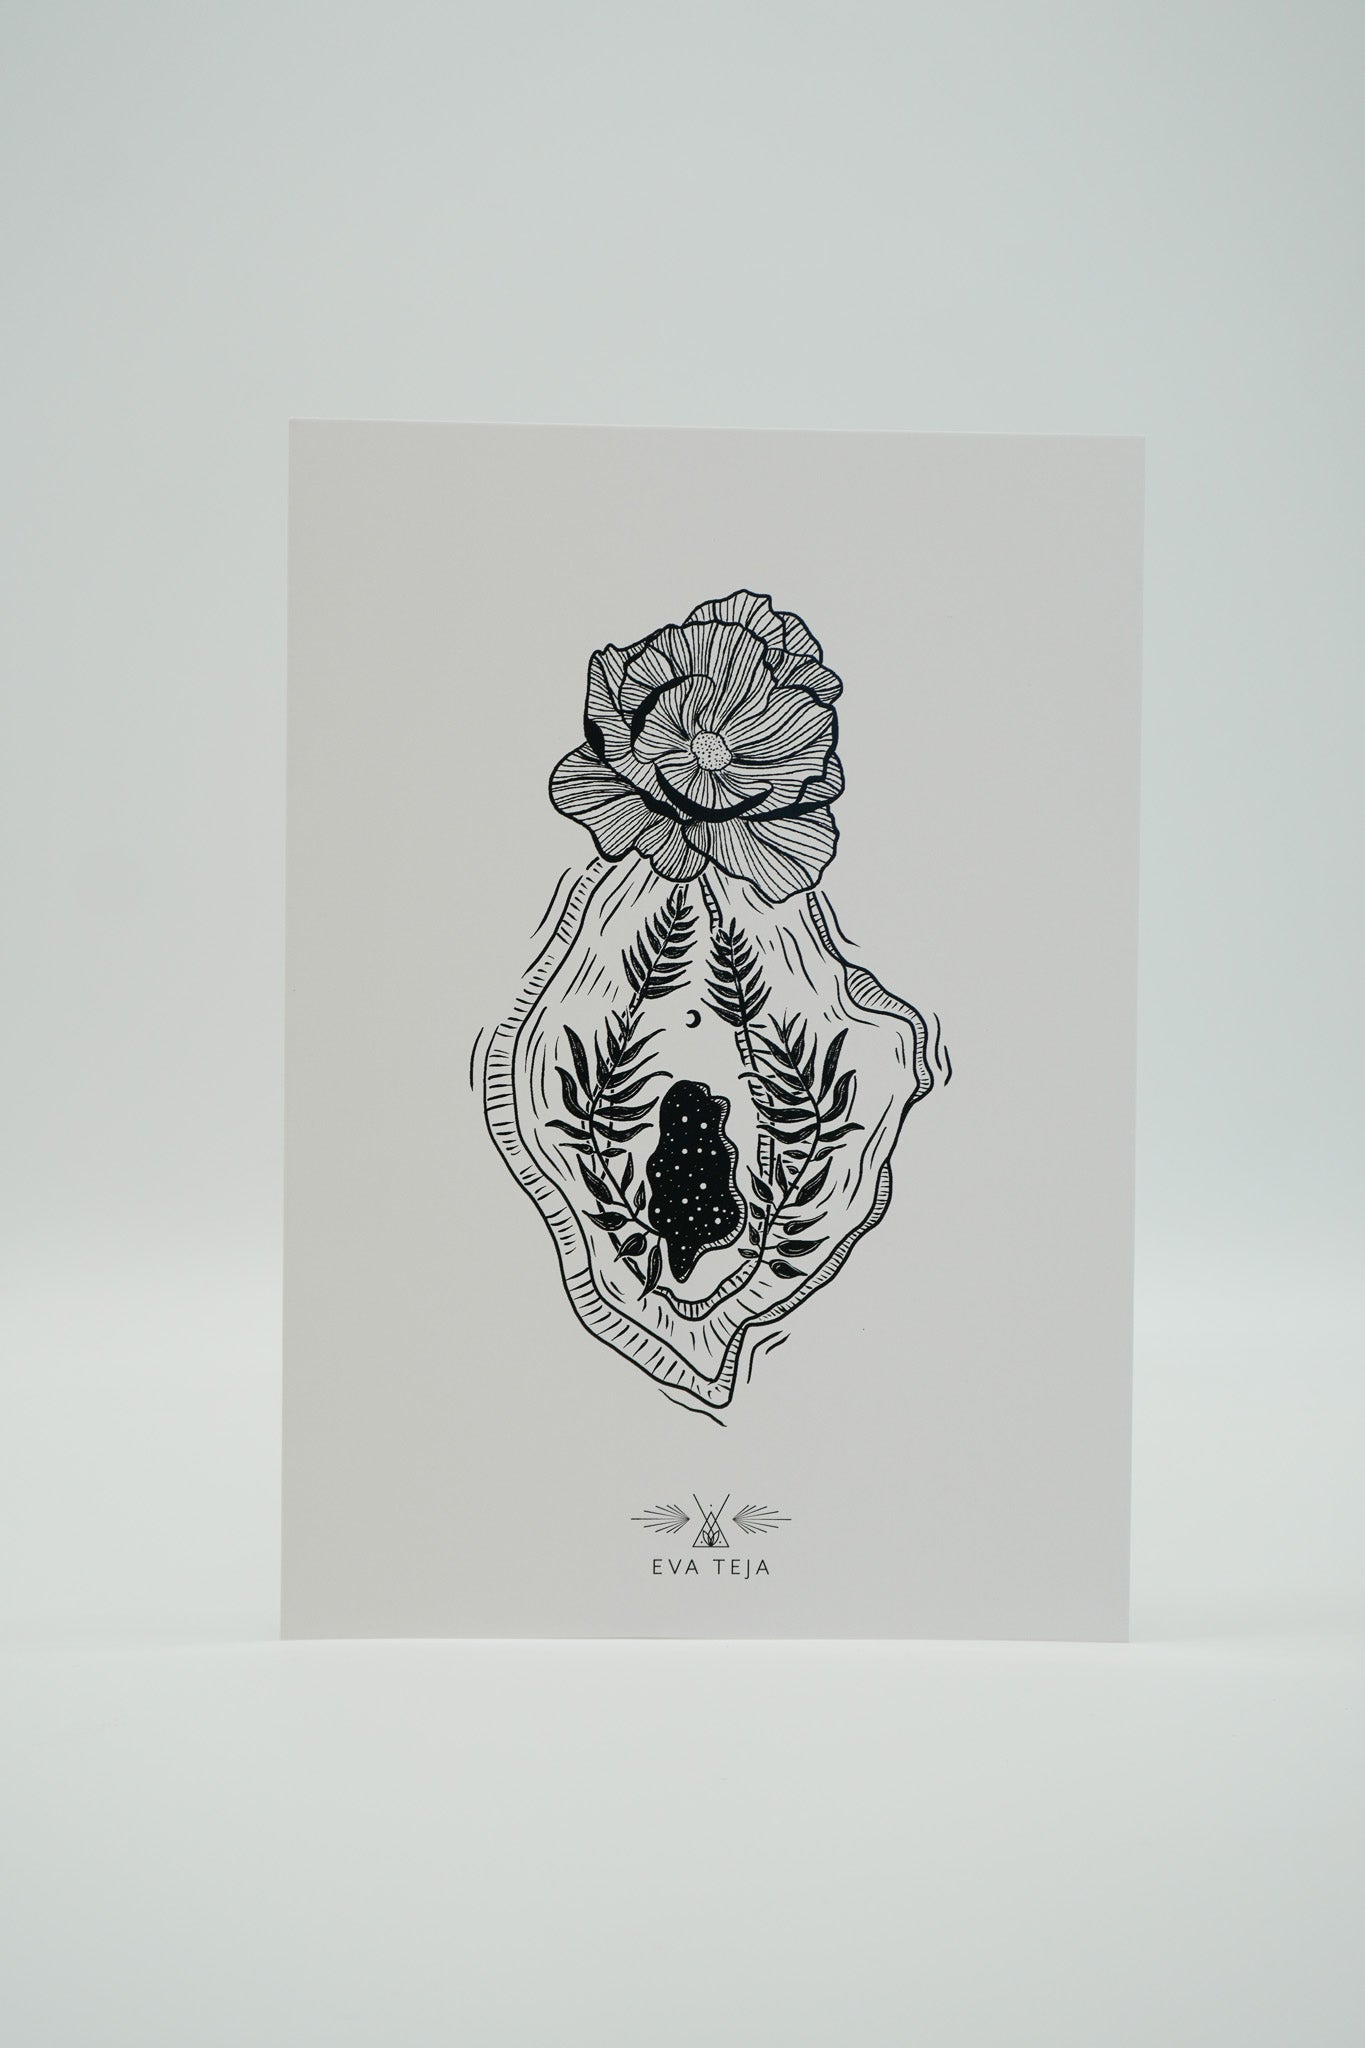 Vulva | Print